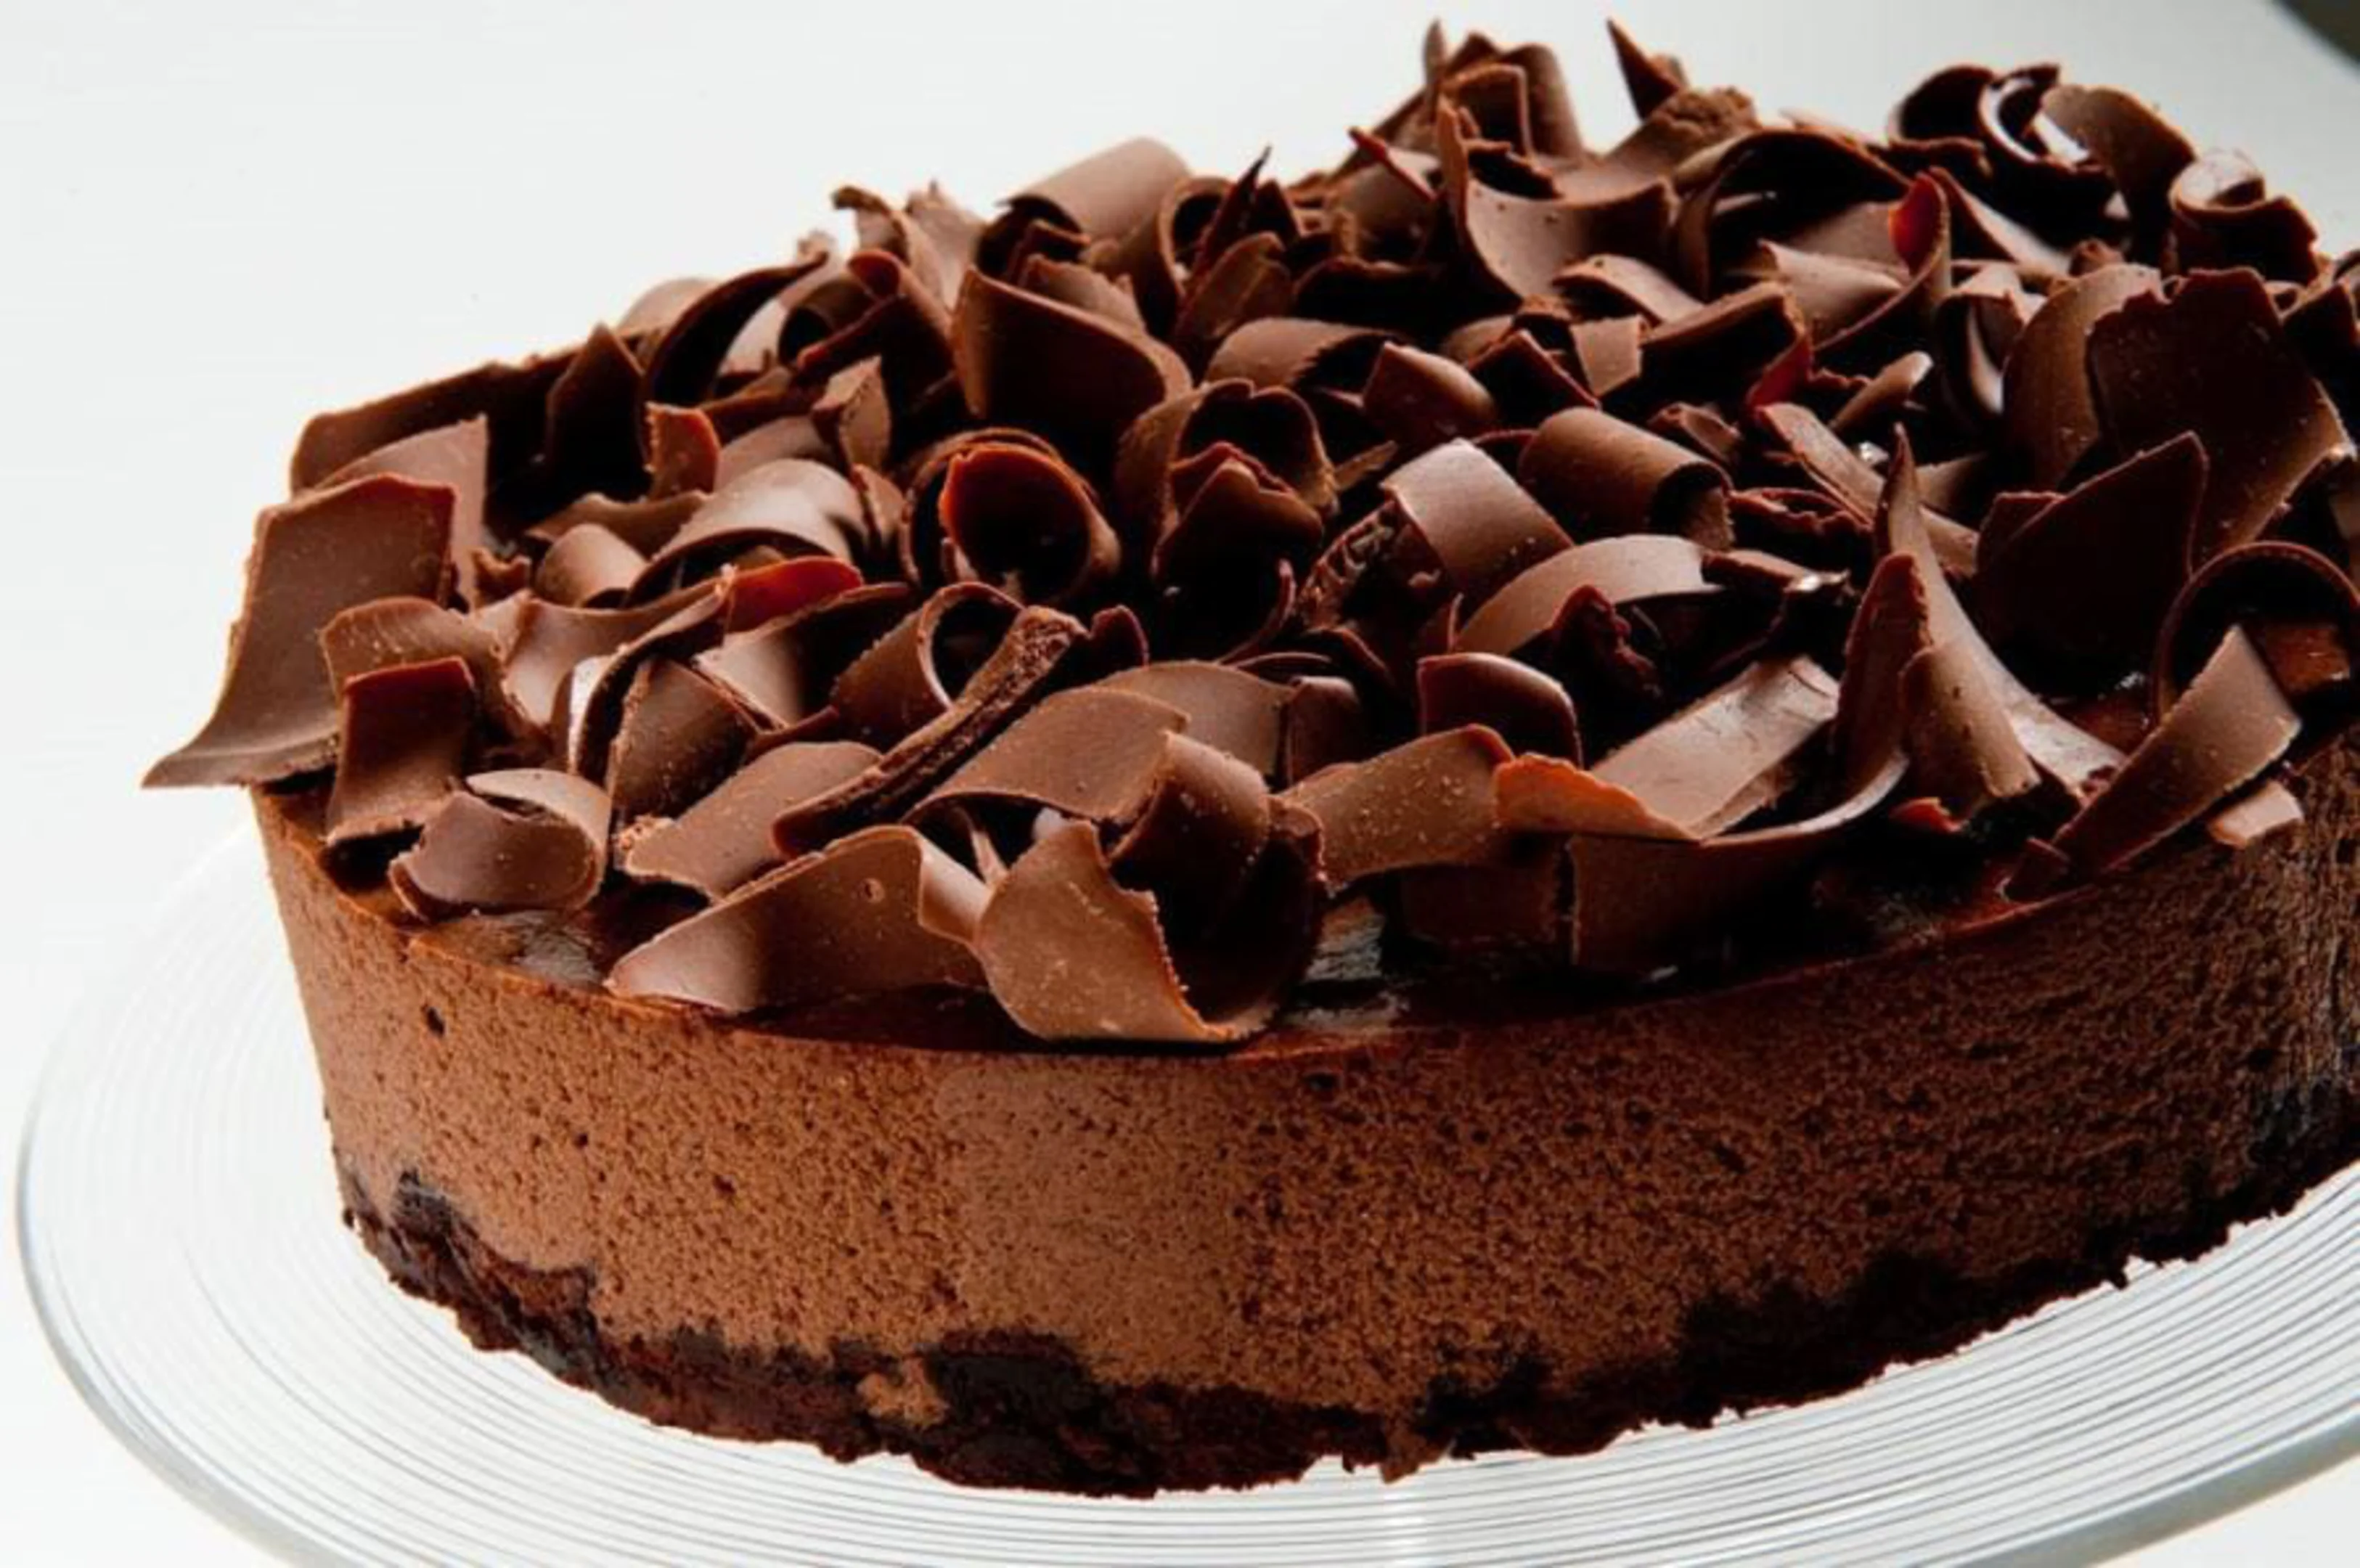 Torta mousse de chocolate - Fatia